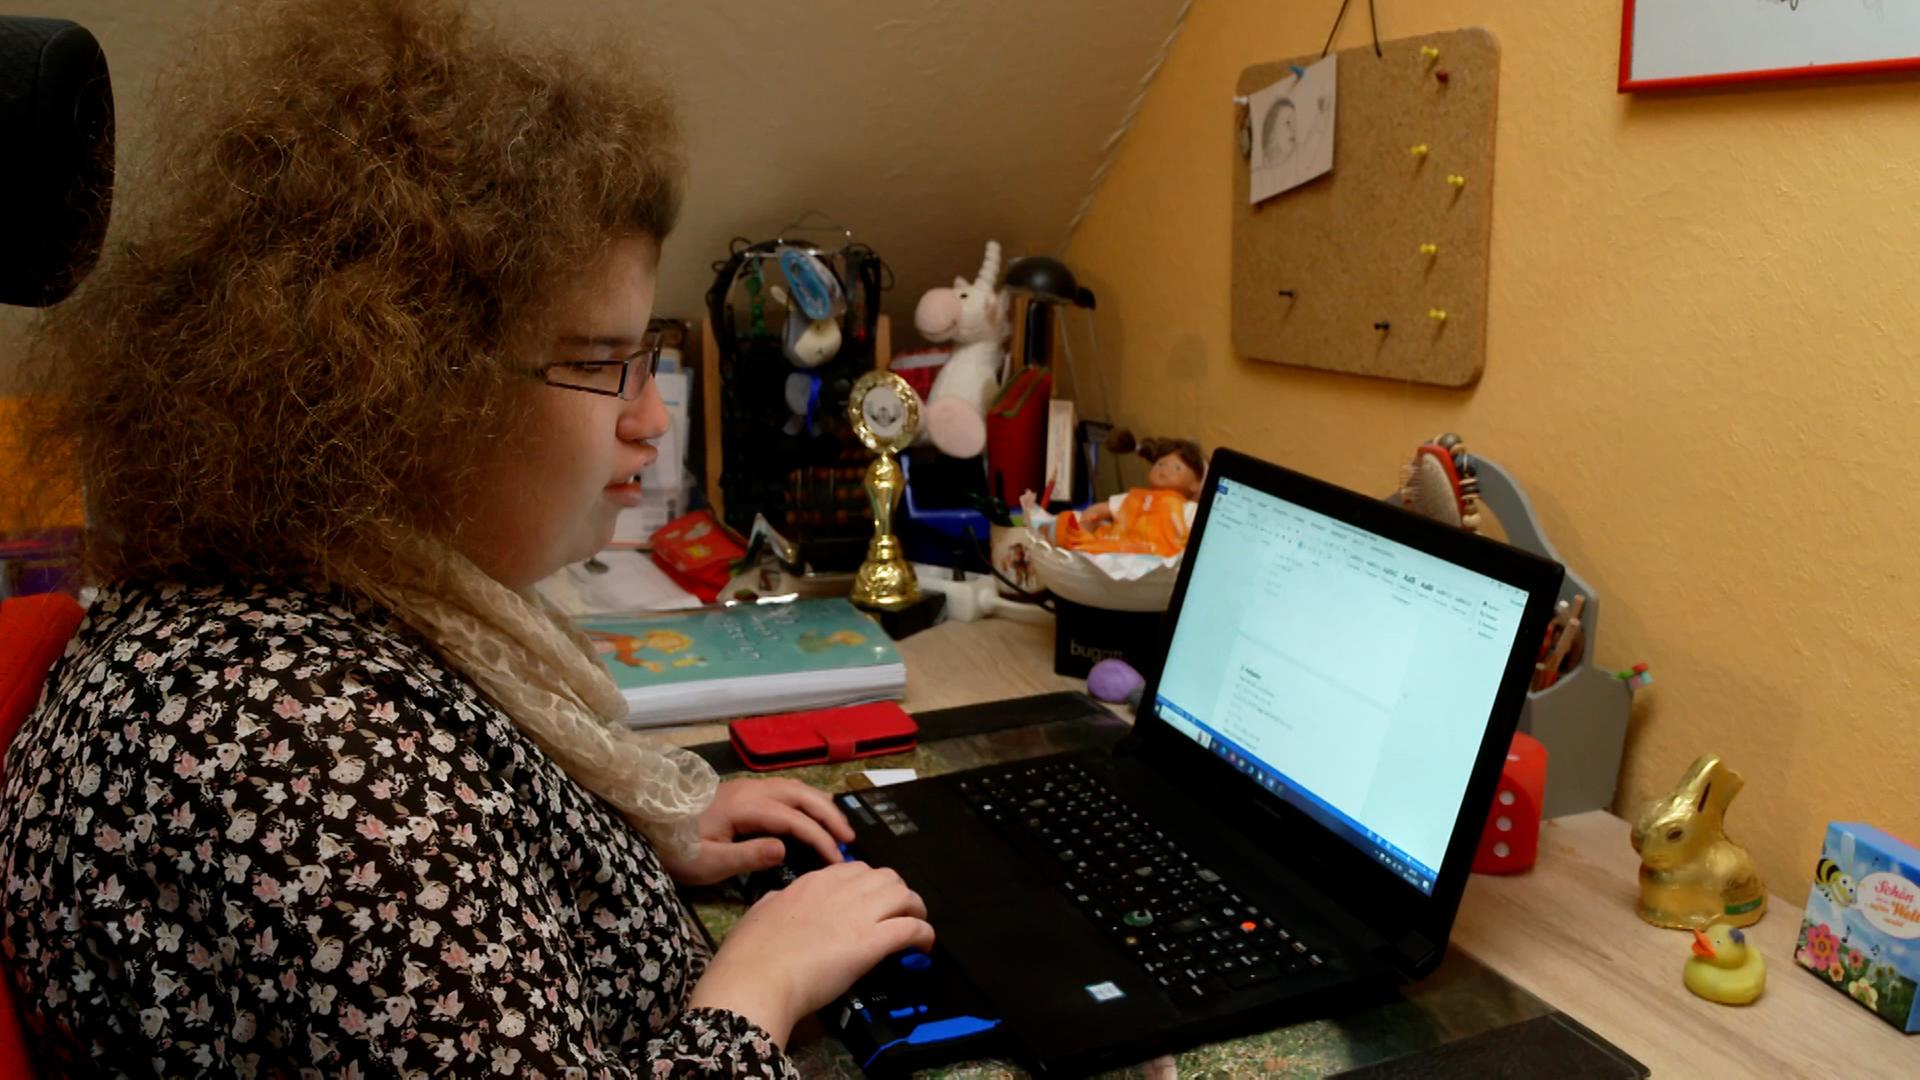 Tabea Tams ist seit Geburt an blind und macht dennoch ihr Abitur. Im Bild sitzt sie am Schreibtisch und arbeitet an einem Laptop.